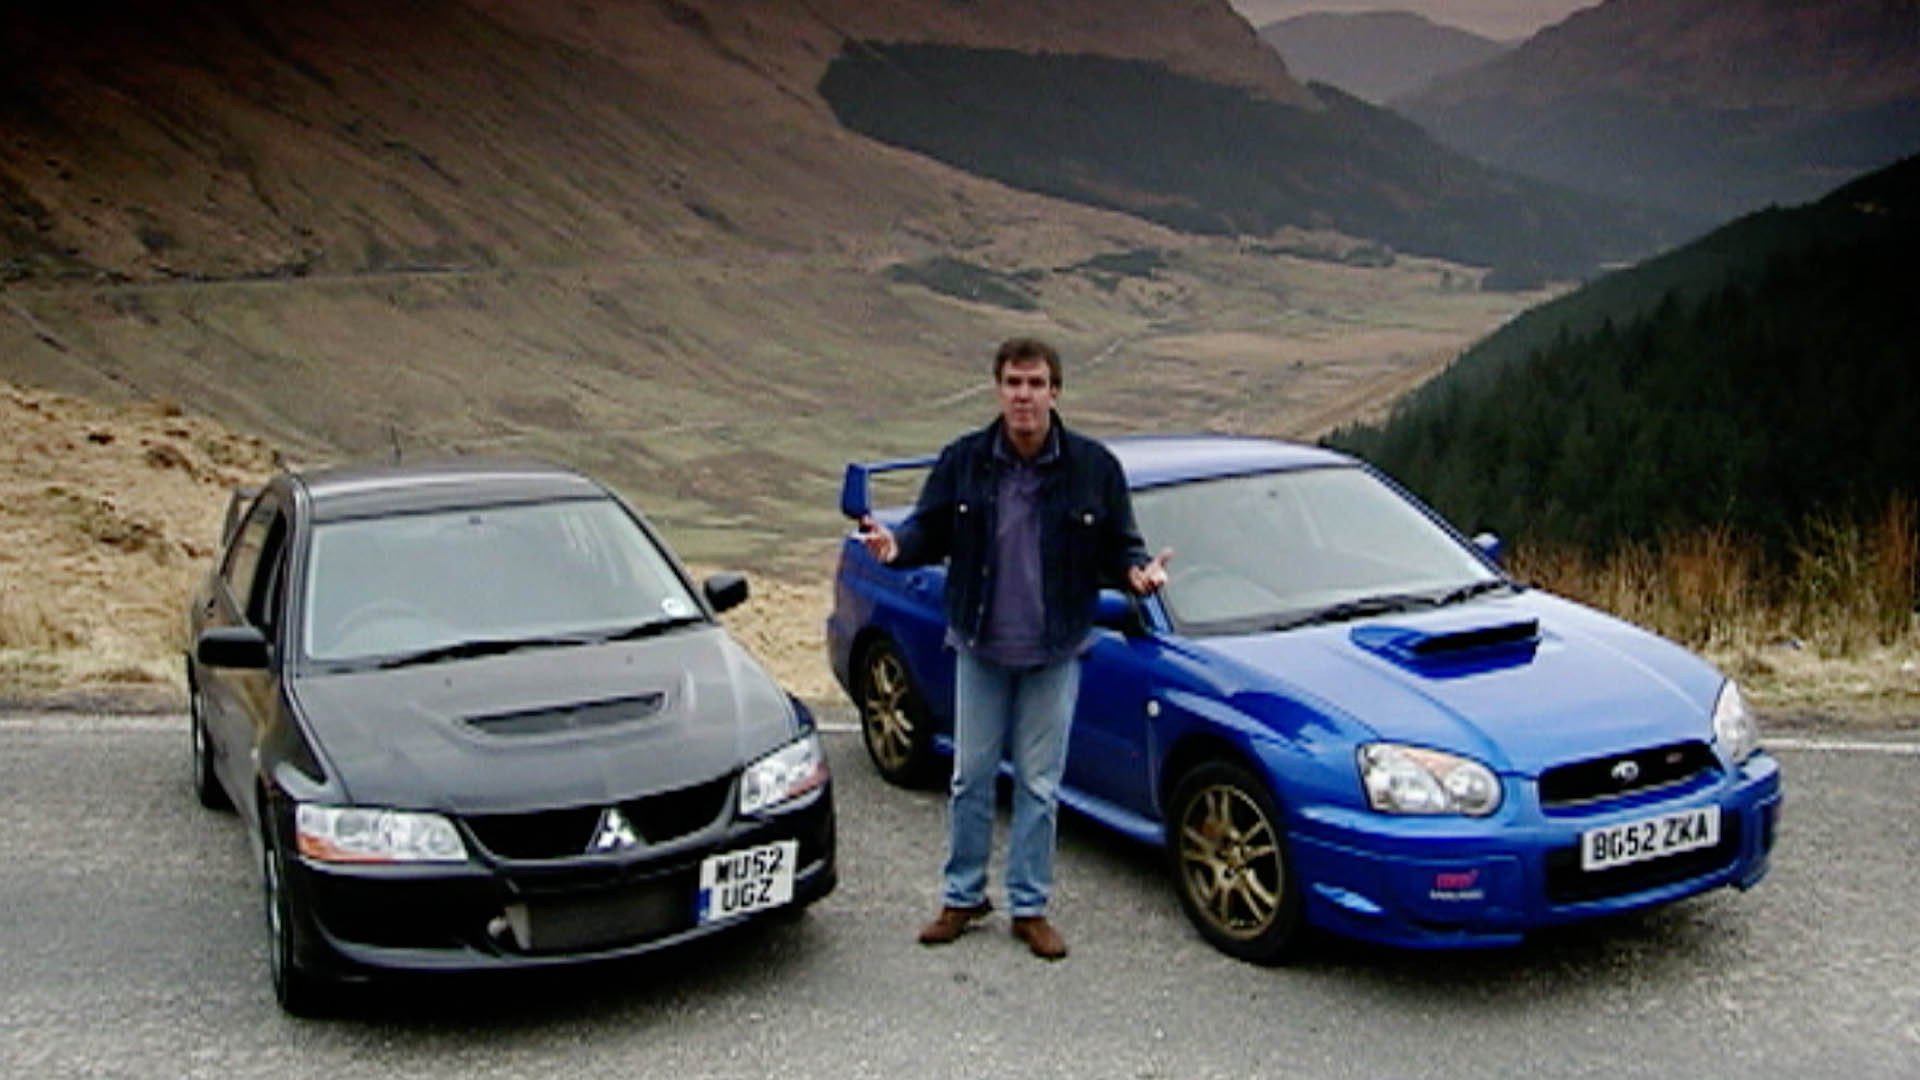 Top Gear 2, Episode 6 Mitsubishi Evo VIII vs. Subaru